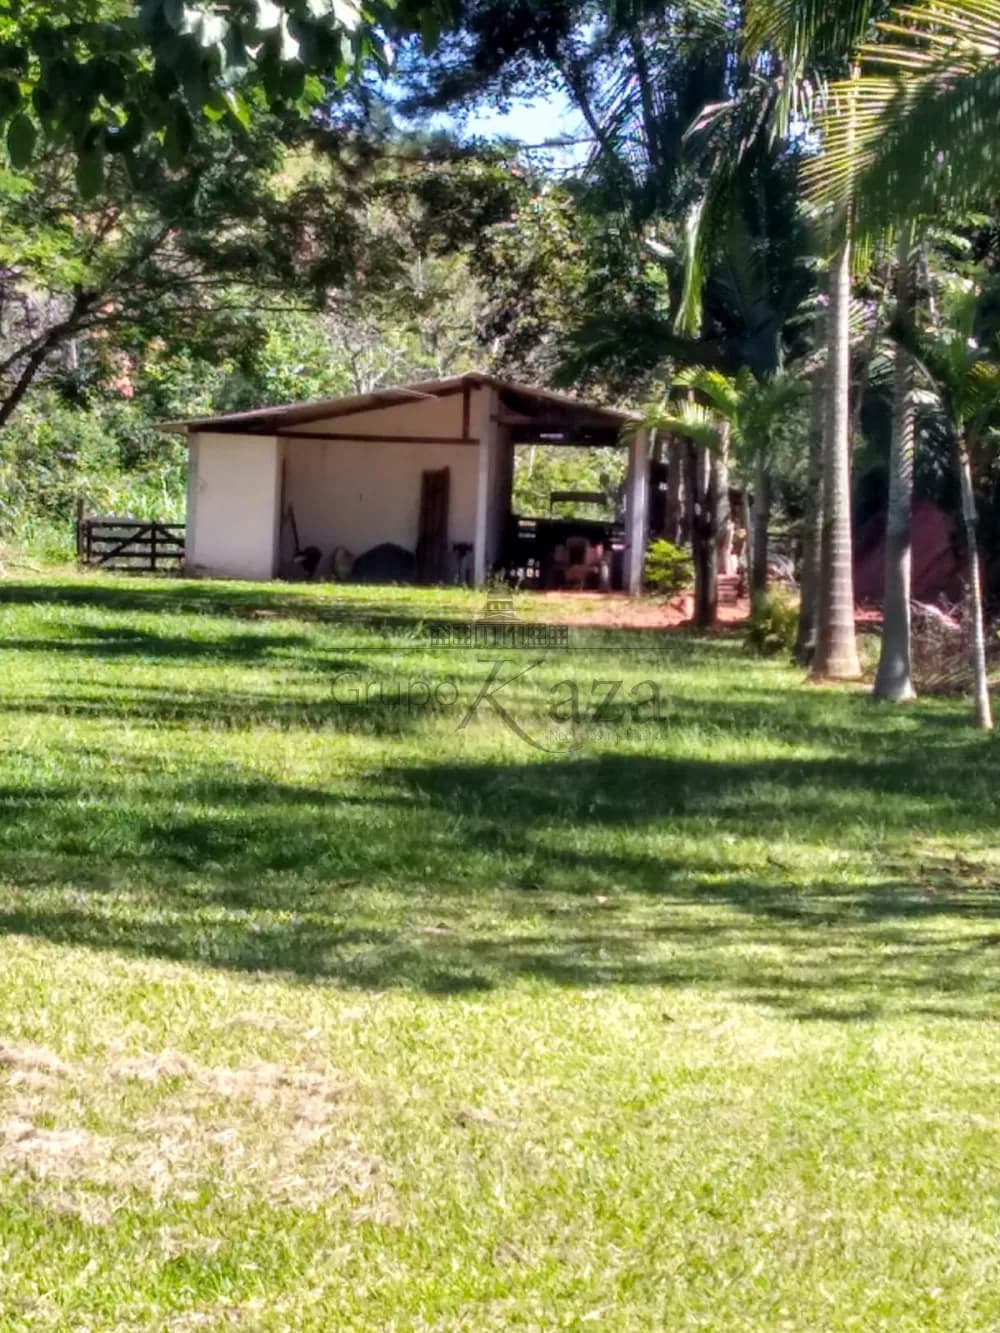 Foto 12 de Rural Chácara em Condomínio Residencial Jaguari - Área 5, São José dos Campos - imagem 12